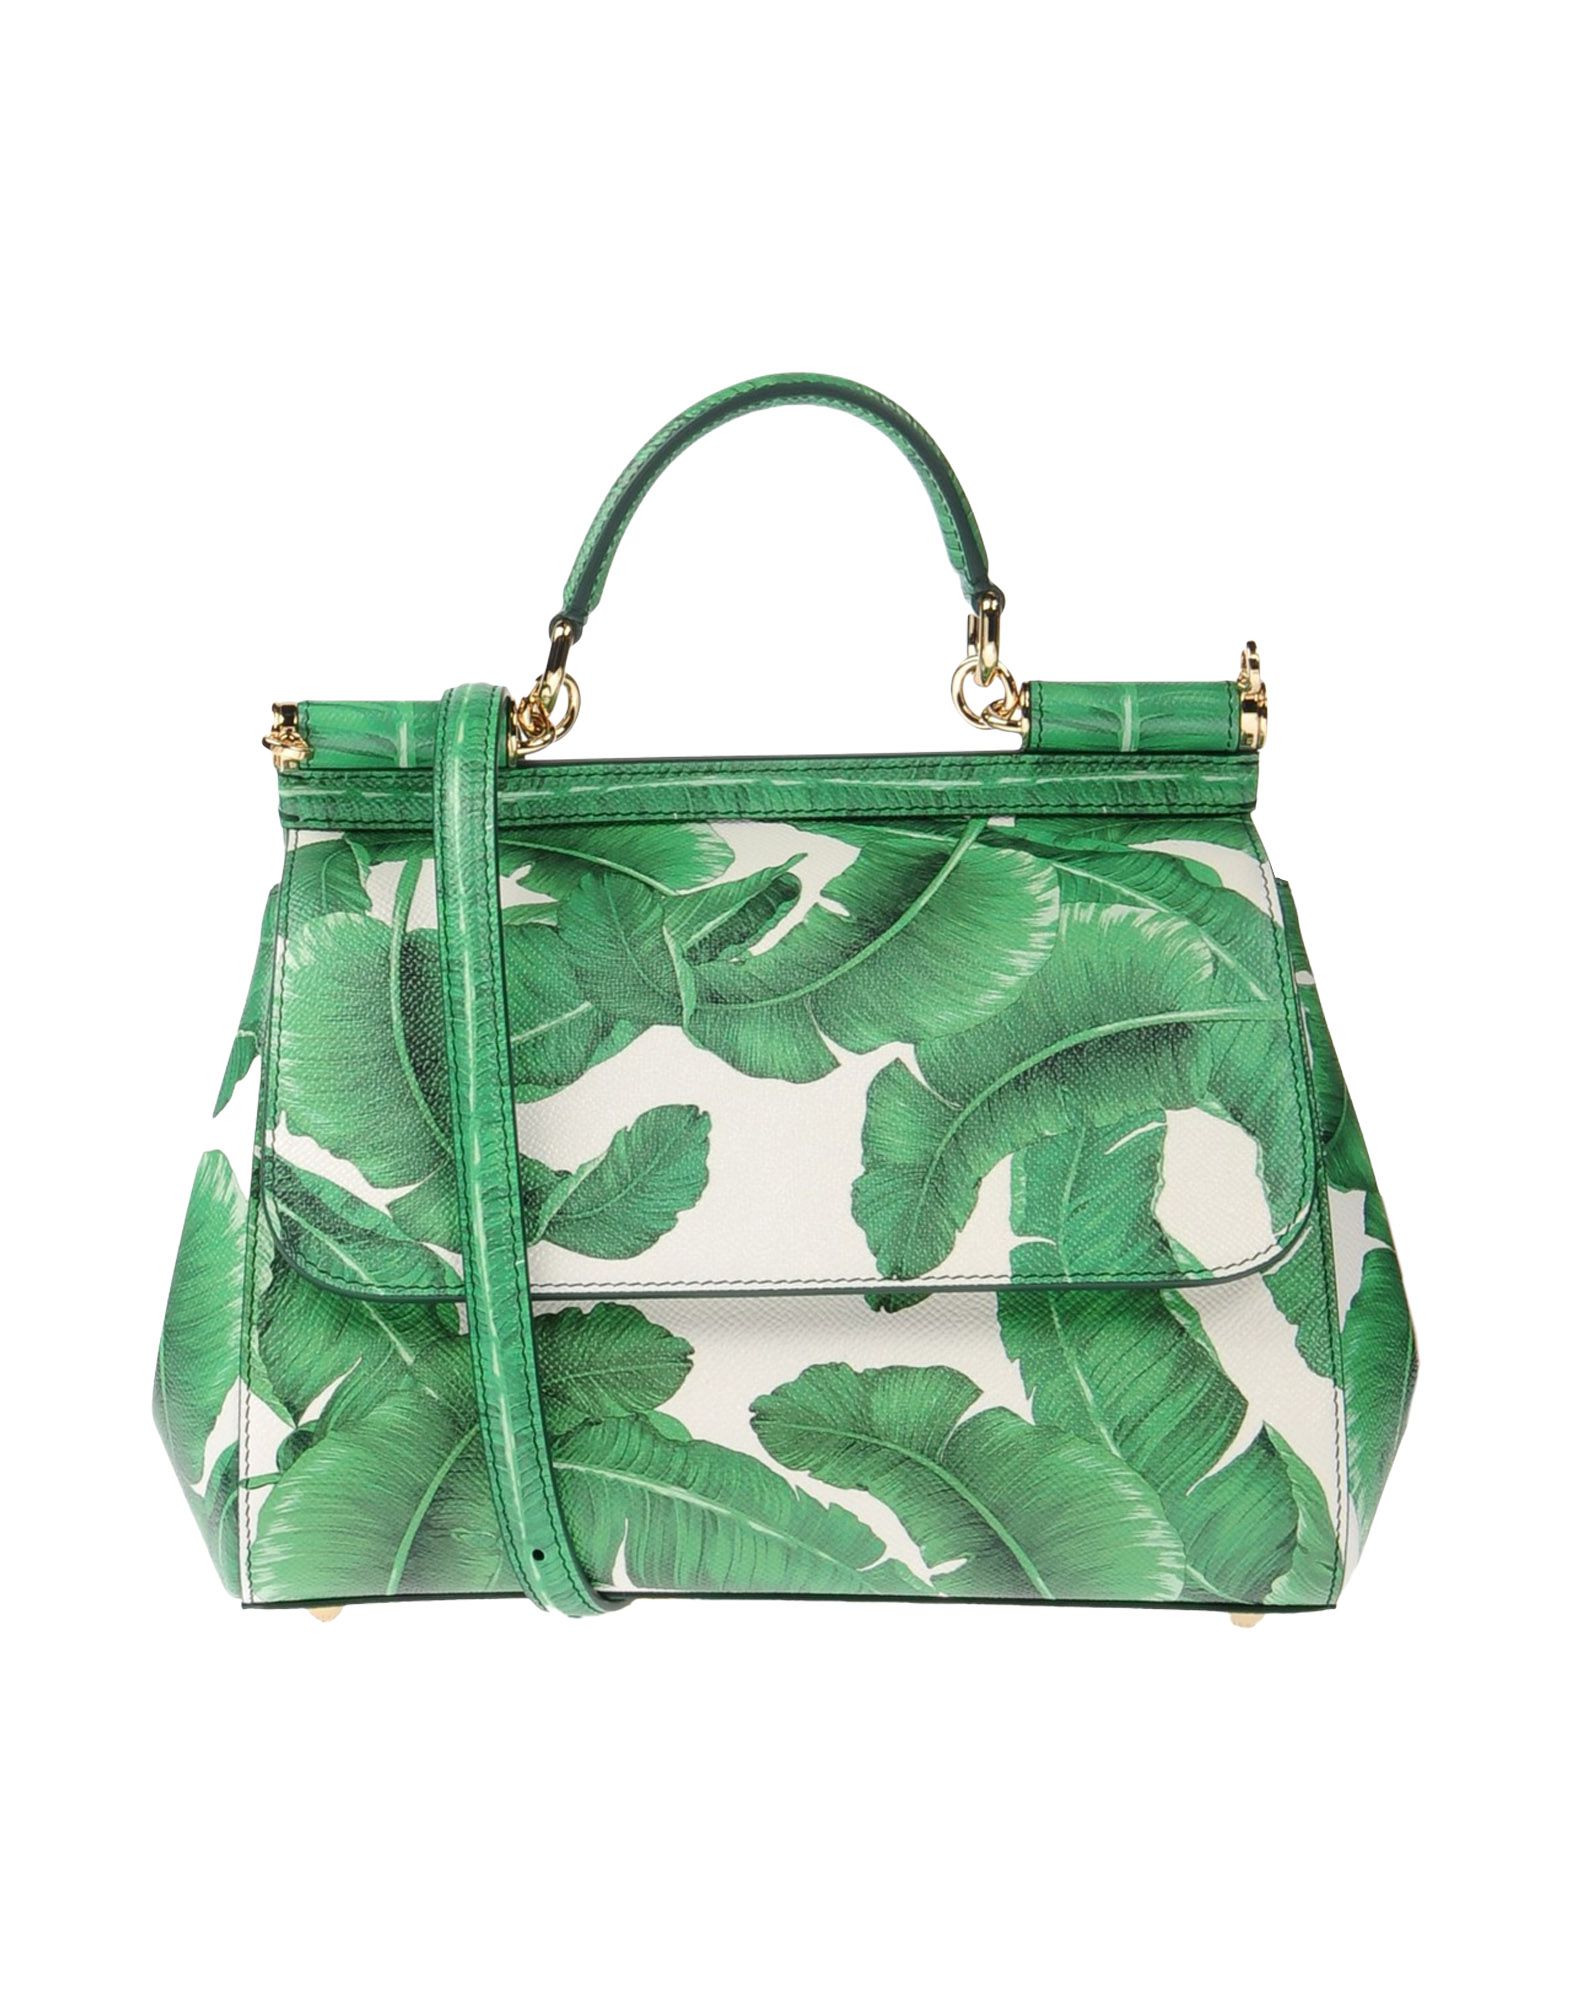 green dolce and gabbana purse